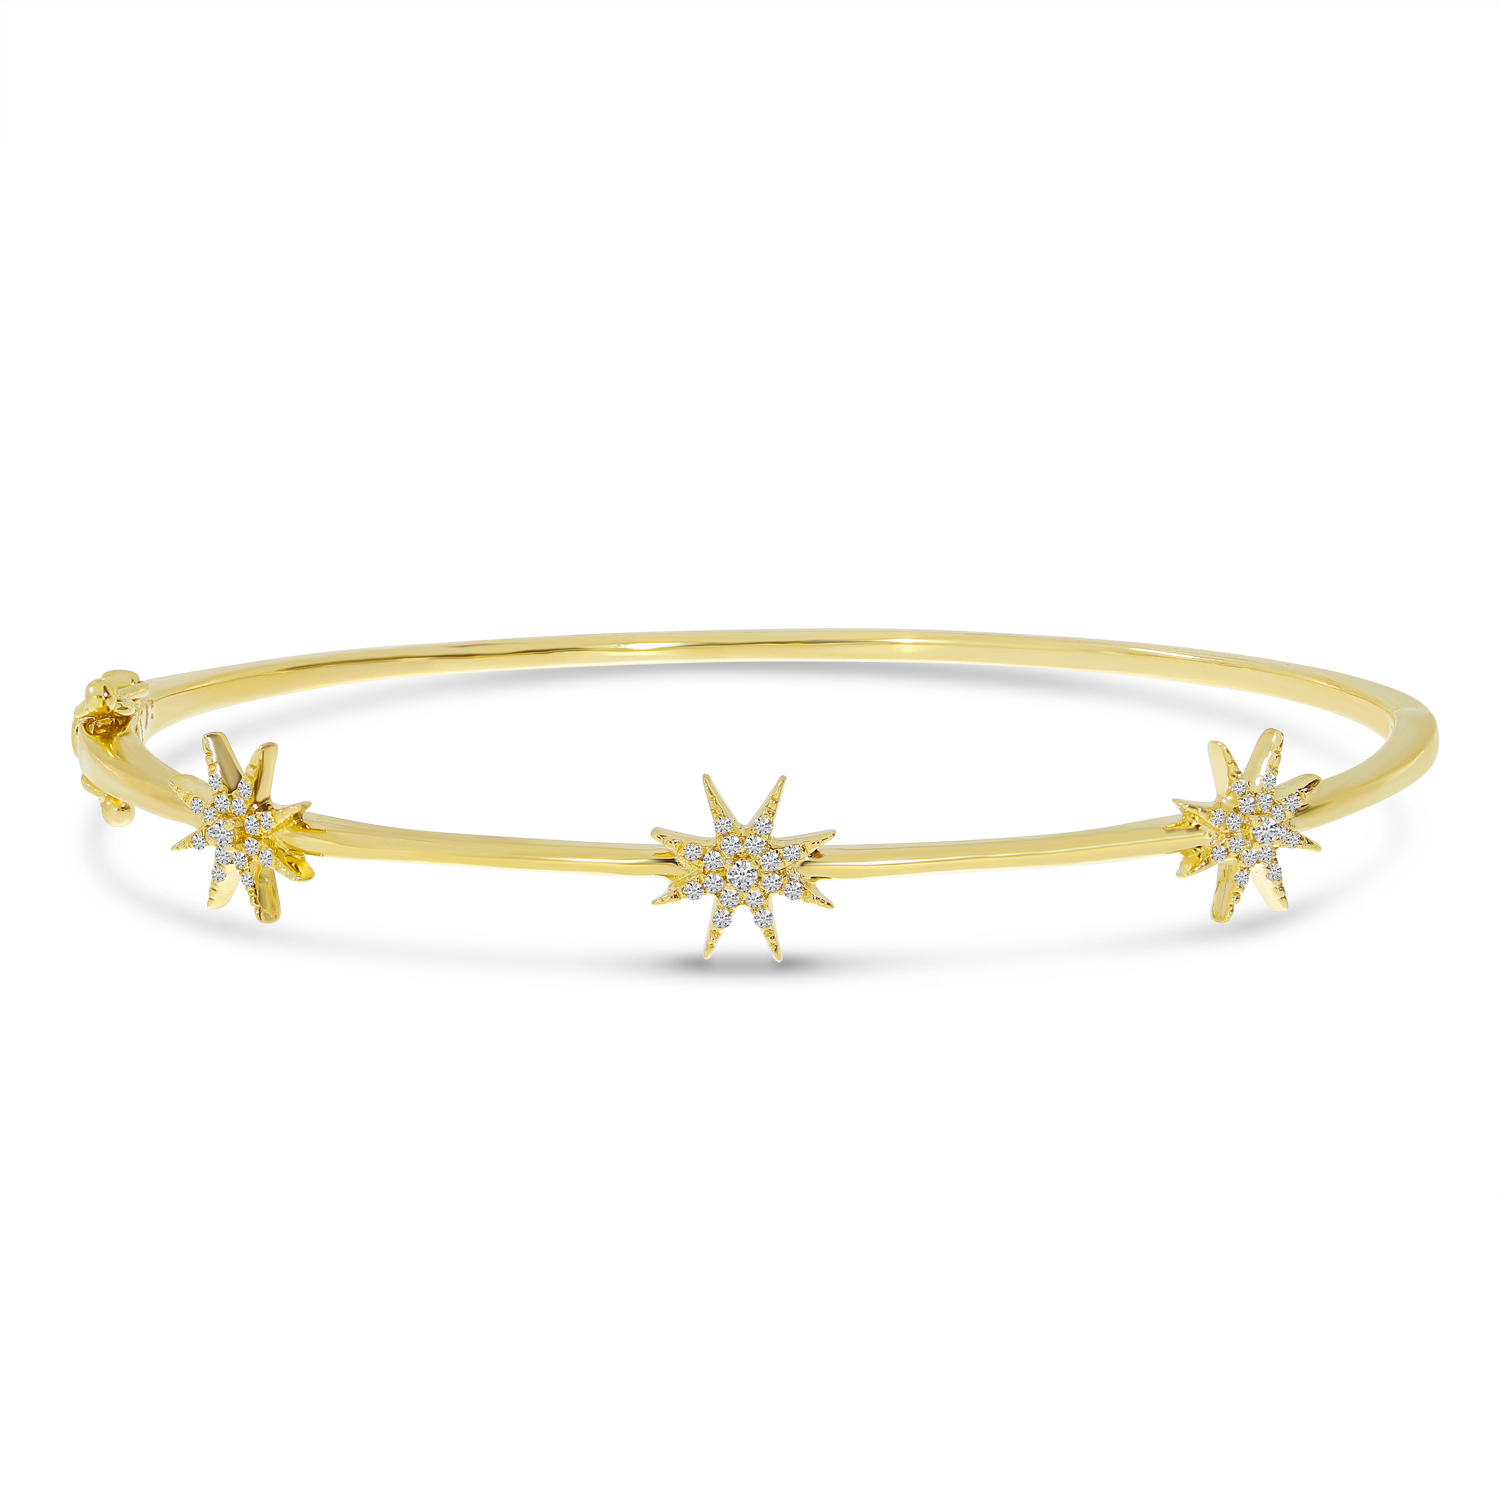 Colormerchants - 14K Yellow Gold Diamond Star Bangle Bracelet